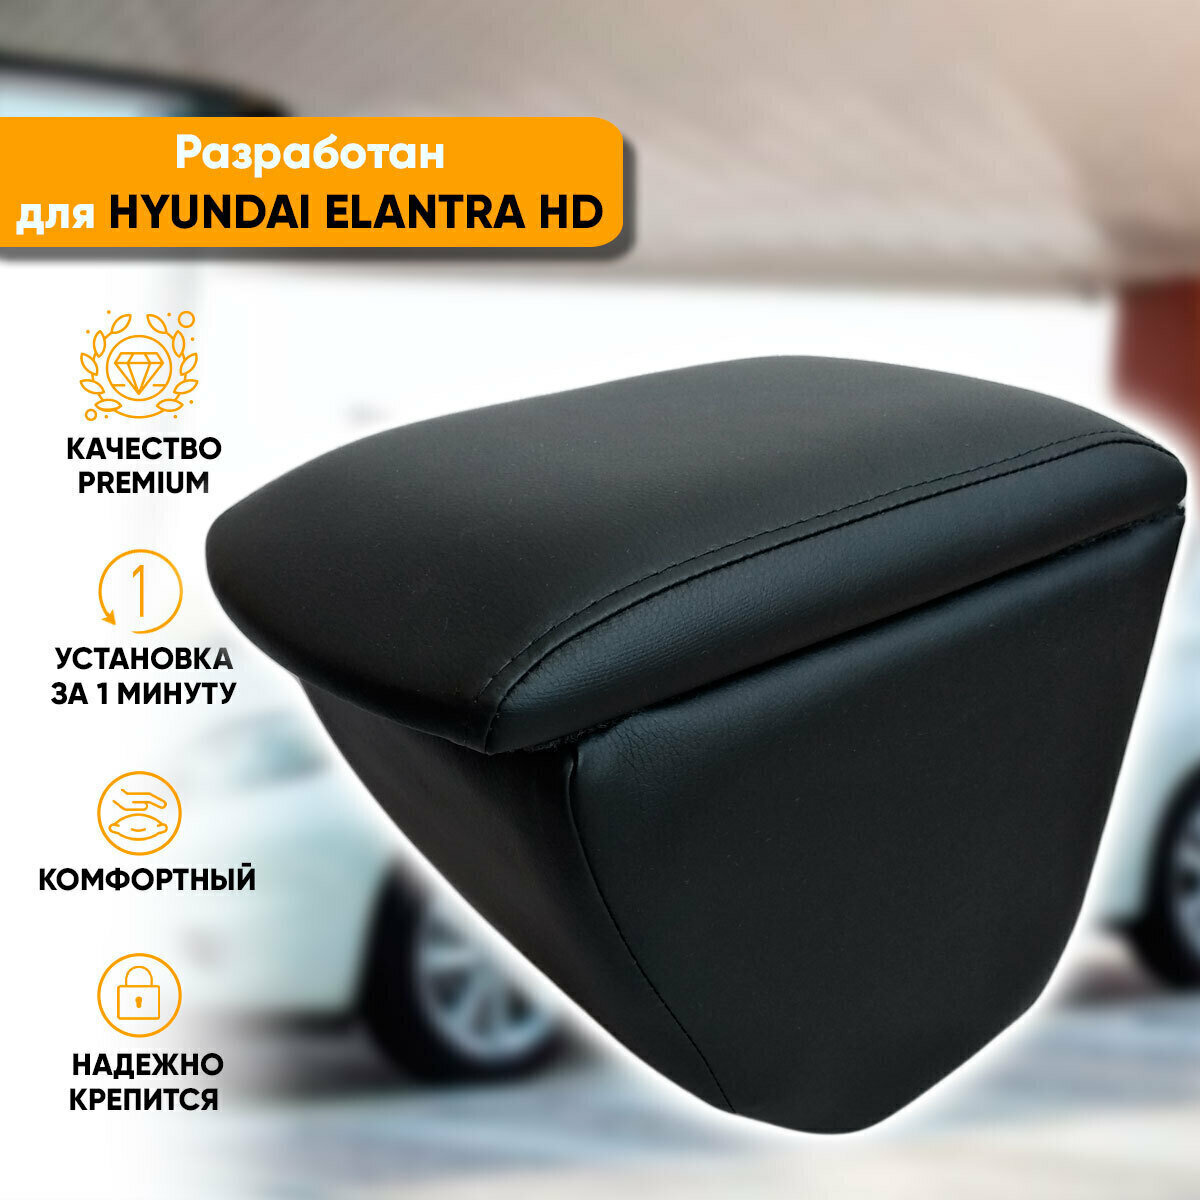 Подлокотник Hyundai Elantra 4 HD / Хендай Элантра HD (2006-2011) легкосъемный (без сверления) с деревянным каркасом (+ мягкий поролон и экокожа), цвет черный, исполнение "Премиум"